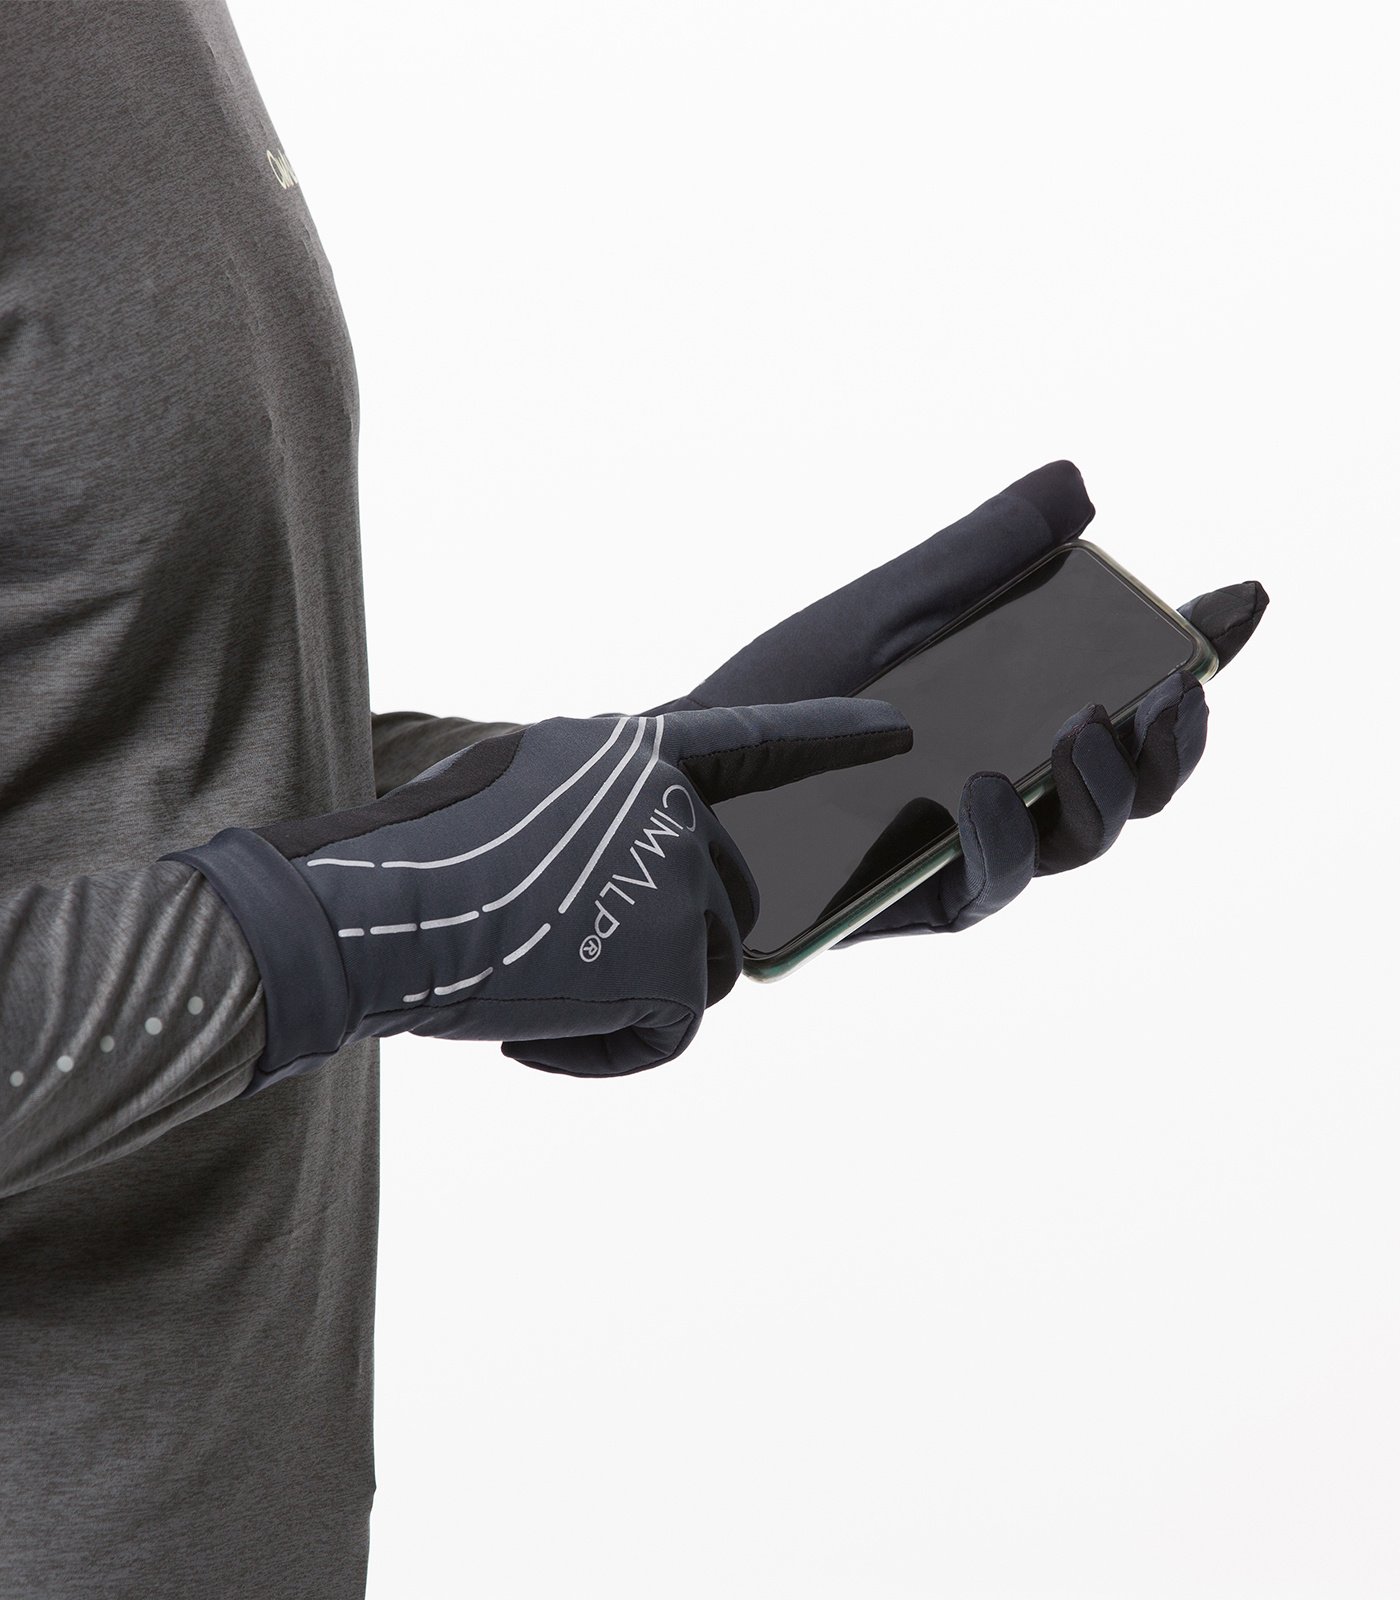 Guanti invernali termici per uomo donna, guanti touch screen leggeri  antiscivolo